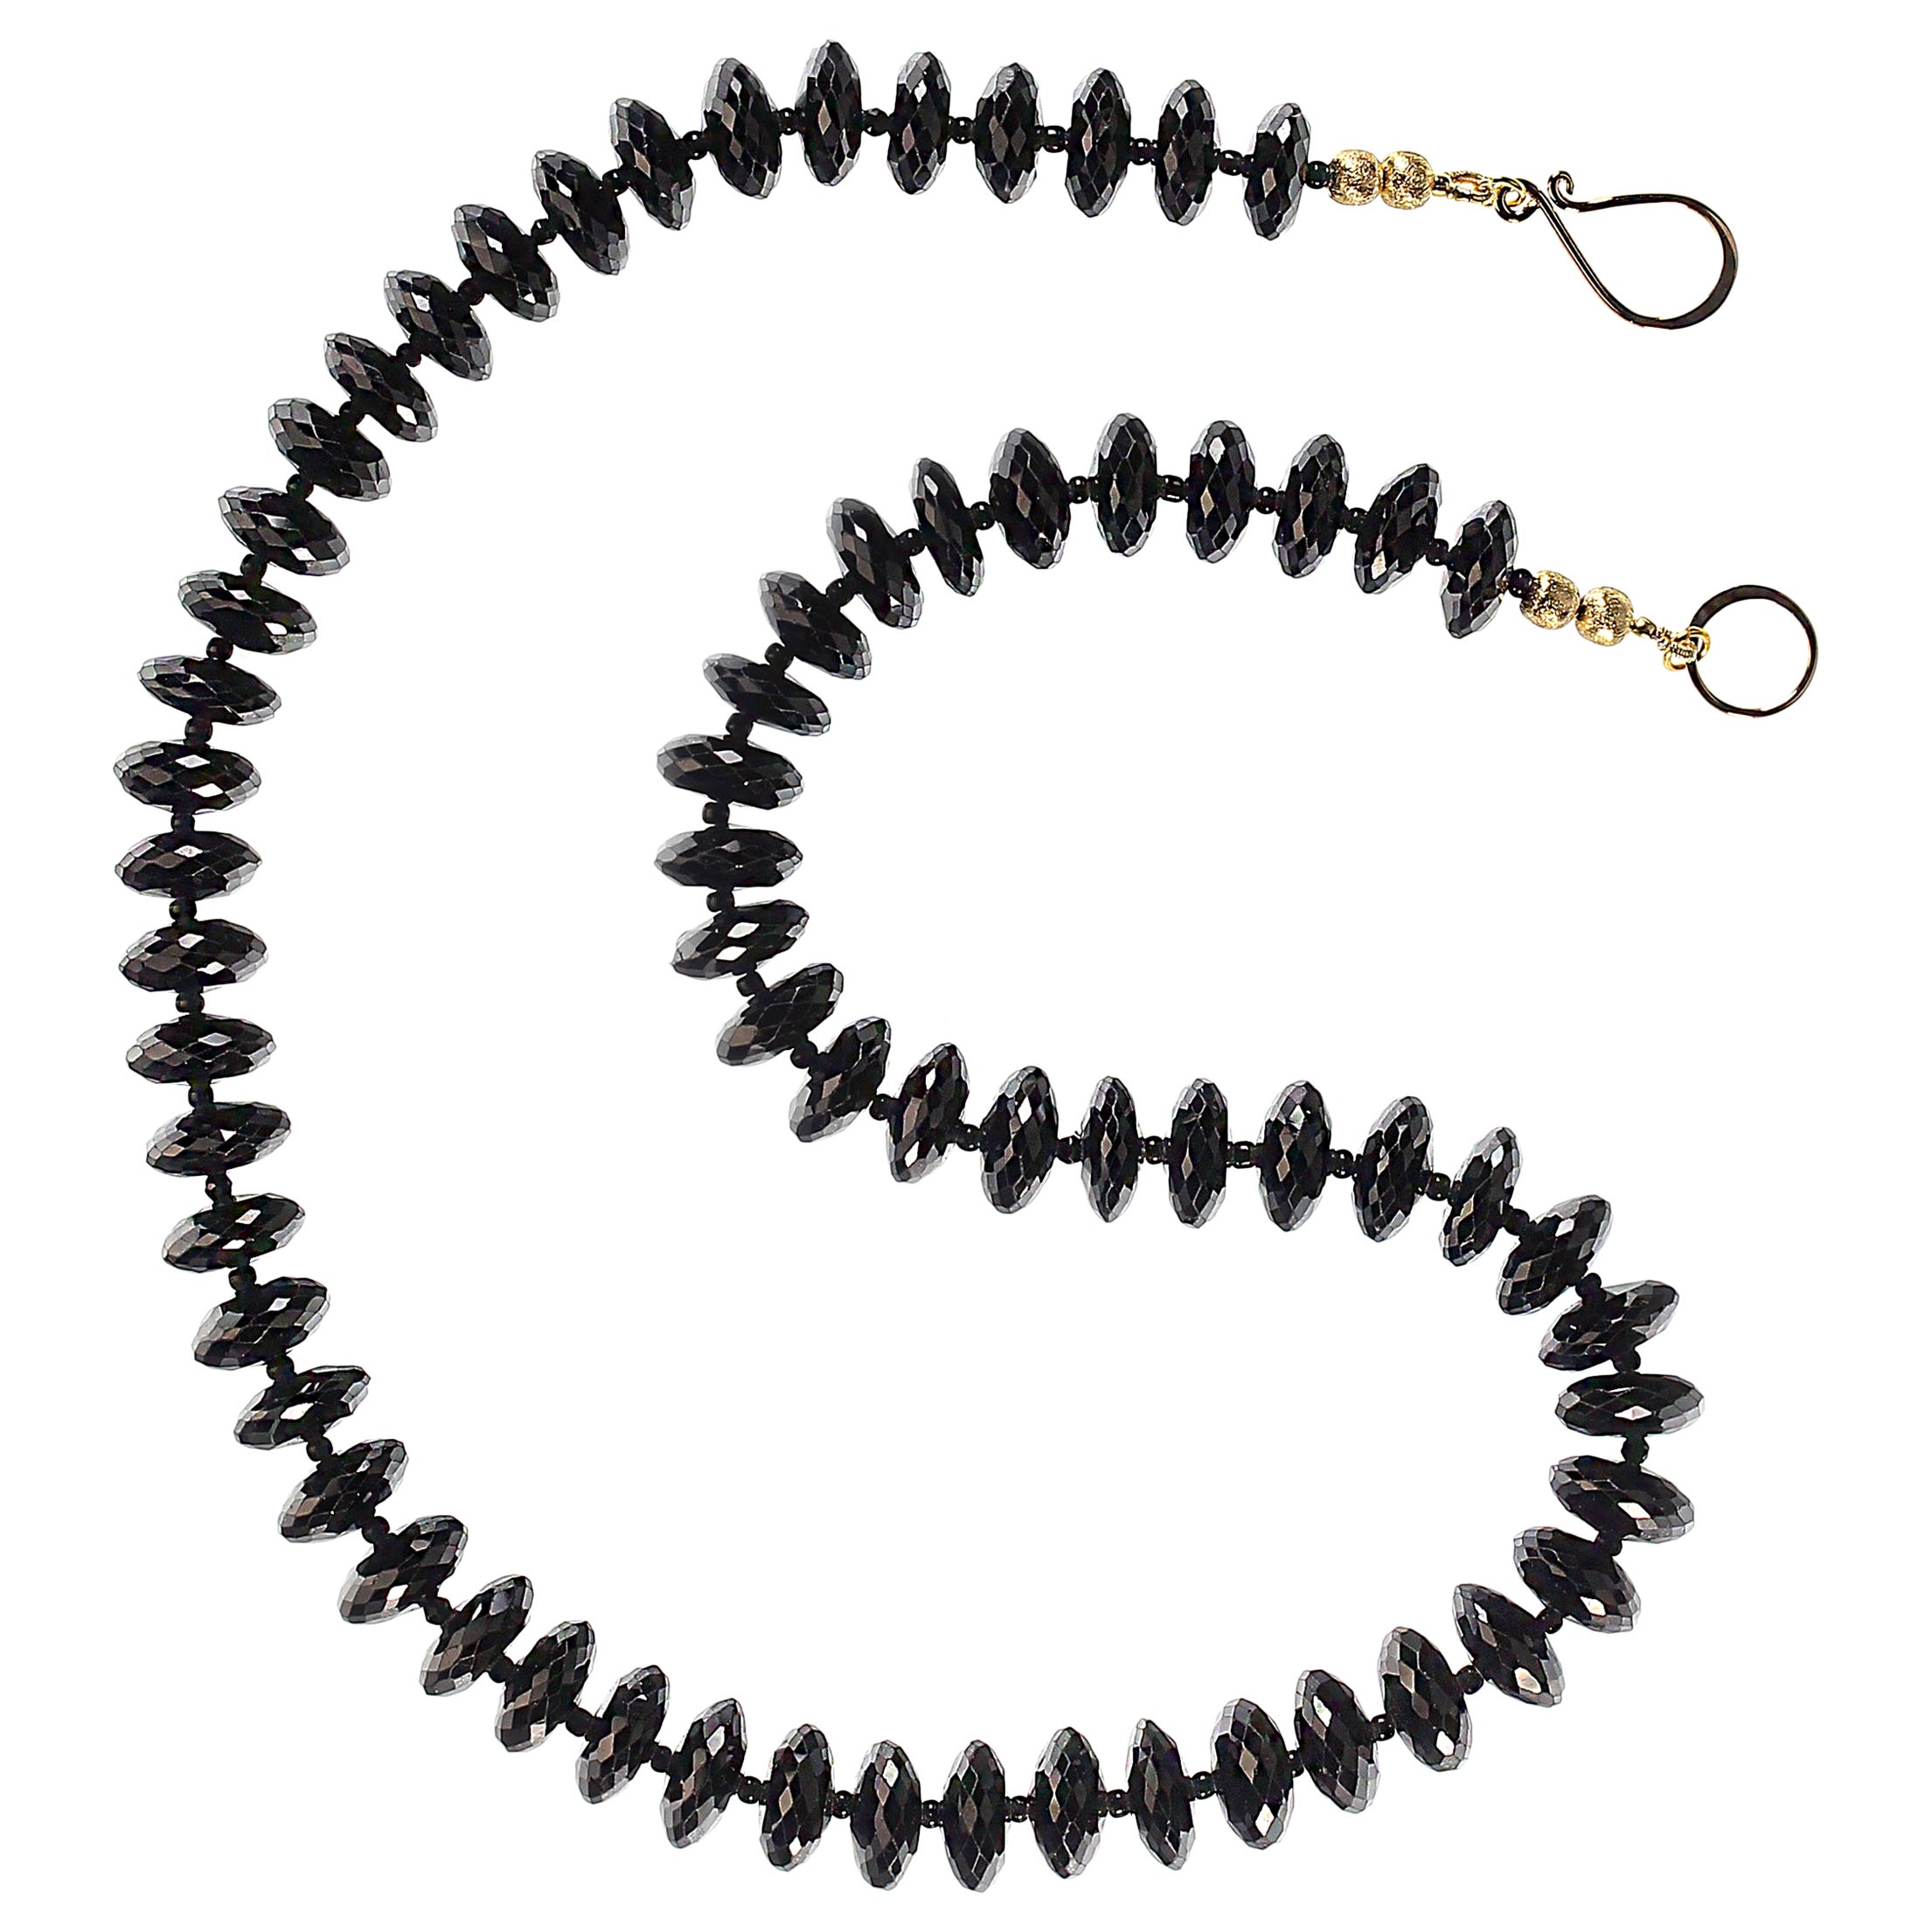 Fabelhafte schwarze Turmalin-Rondell-Halskette, die so funkelt, dass sie fast vom Hals springt!  Diese facettierte schwarze Turmalin-Halskette ist einfach entzückend und köstlich.  Sie werden es lieben, diese spektakuläre 18-Zoll-Halskette zu